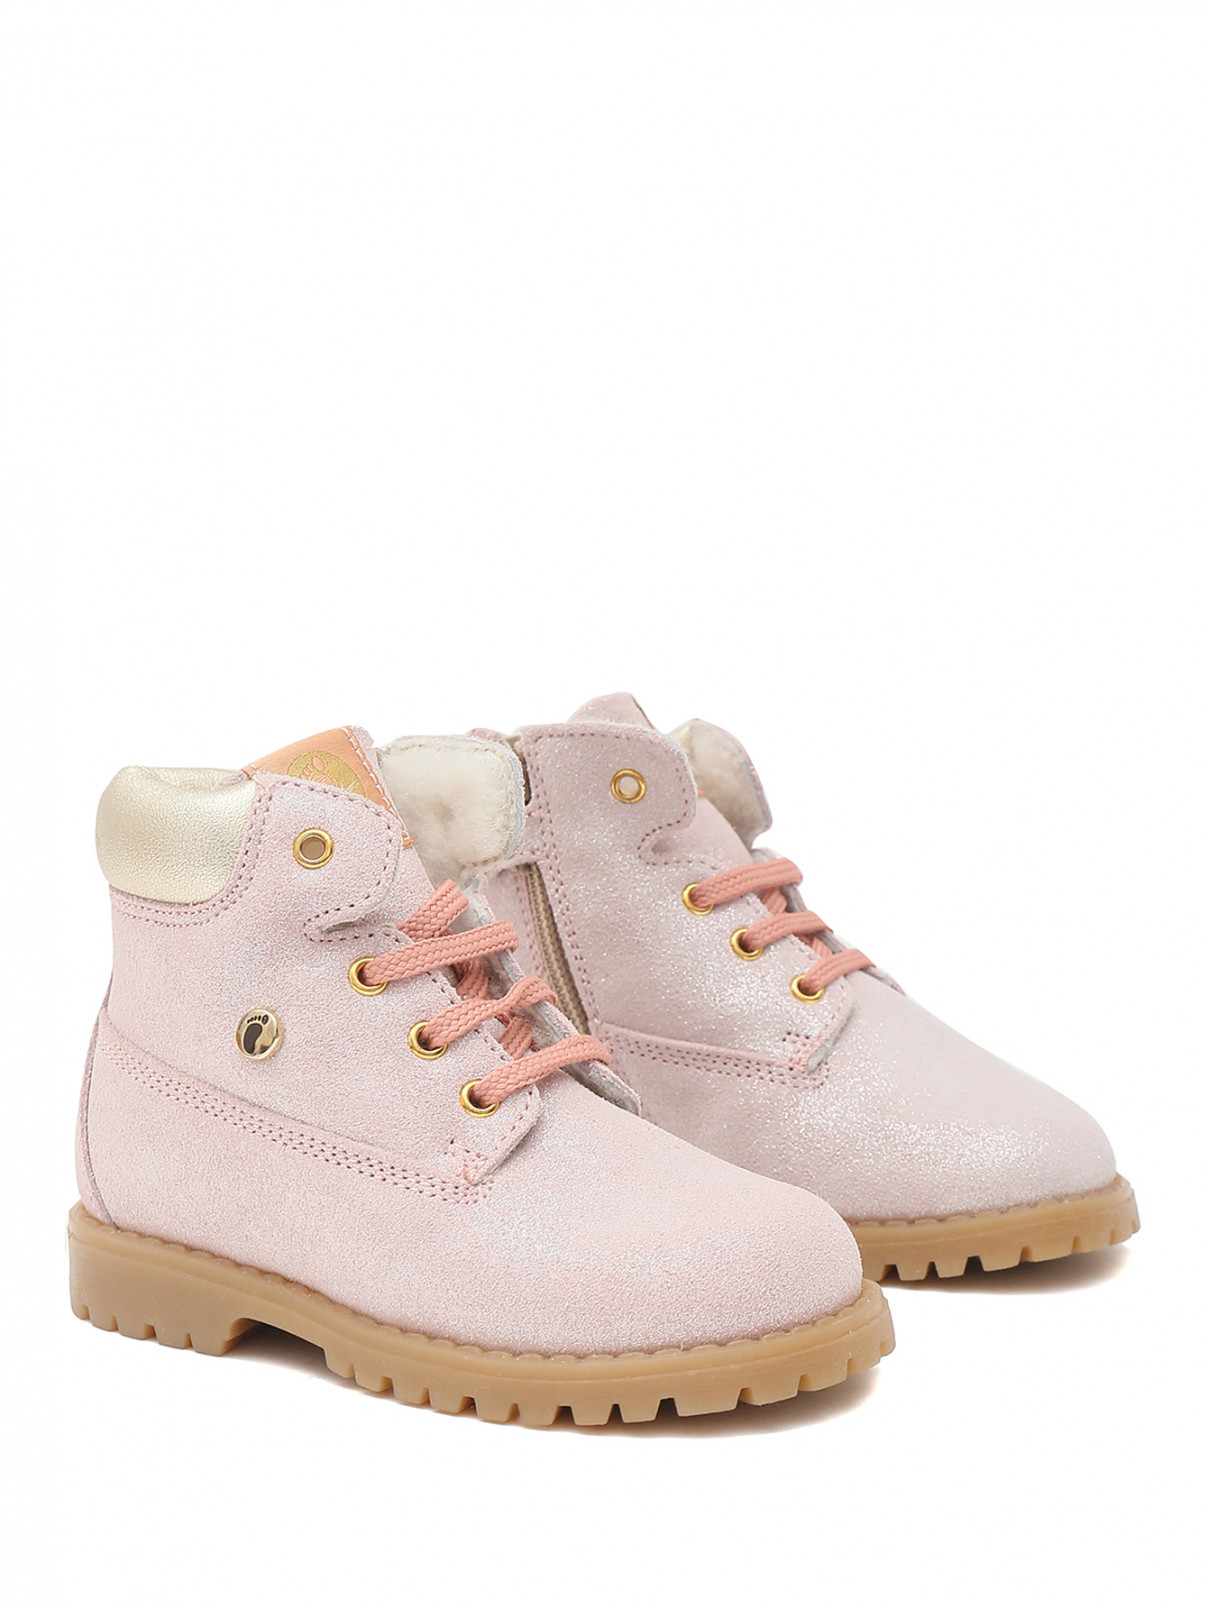 Кожаные ботинки с блеском Walkey  –  Общий вид  – Цвет:  Розовый